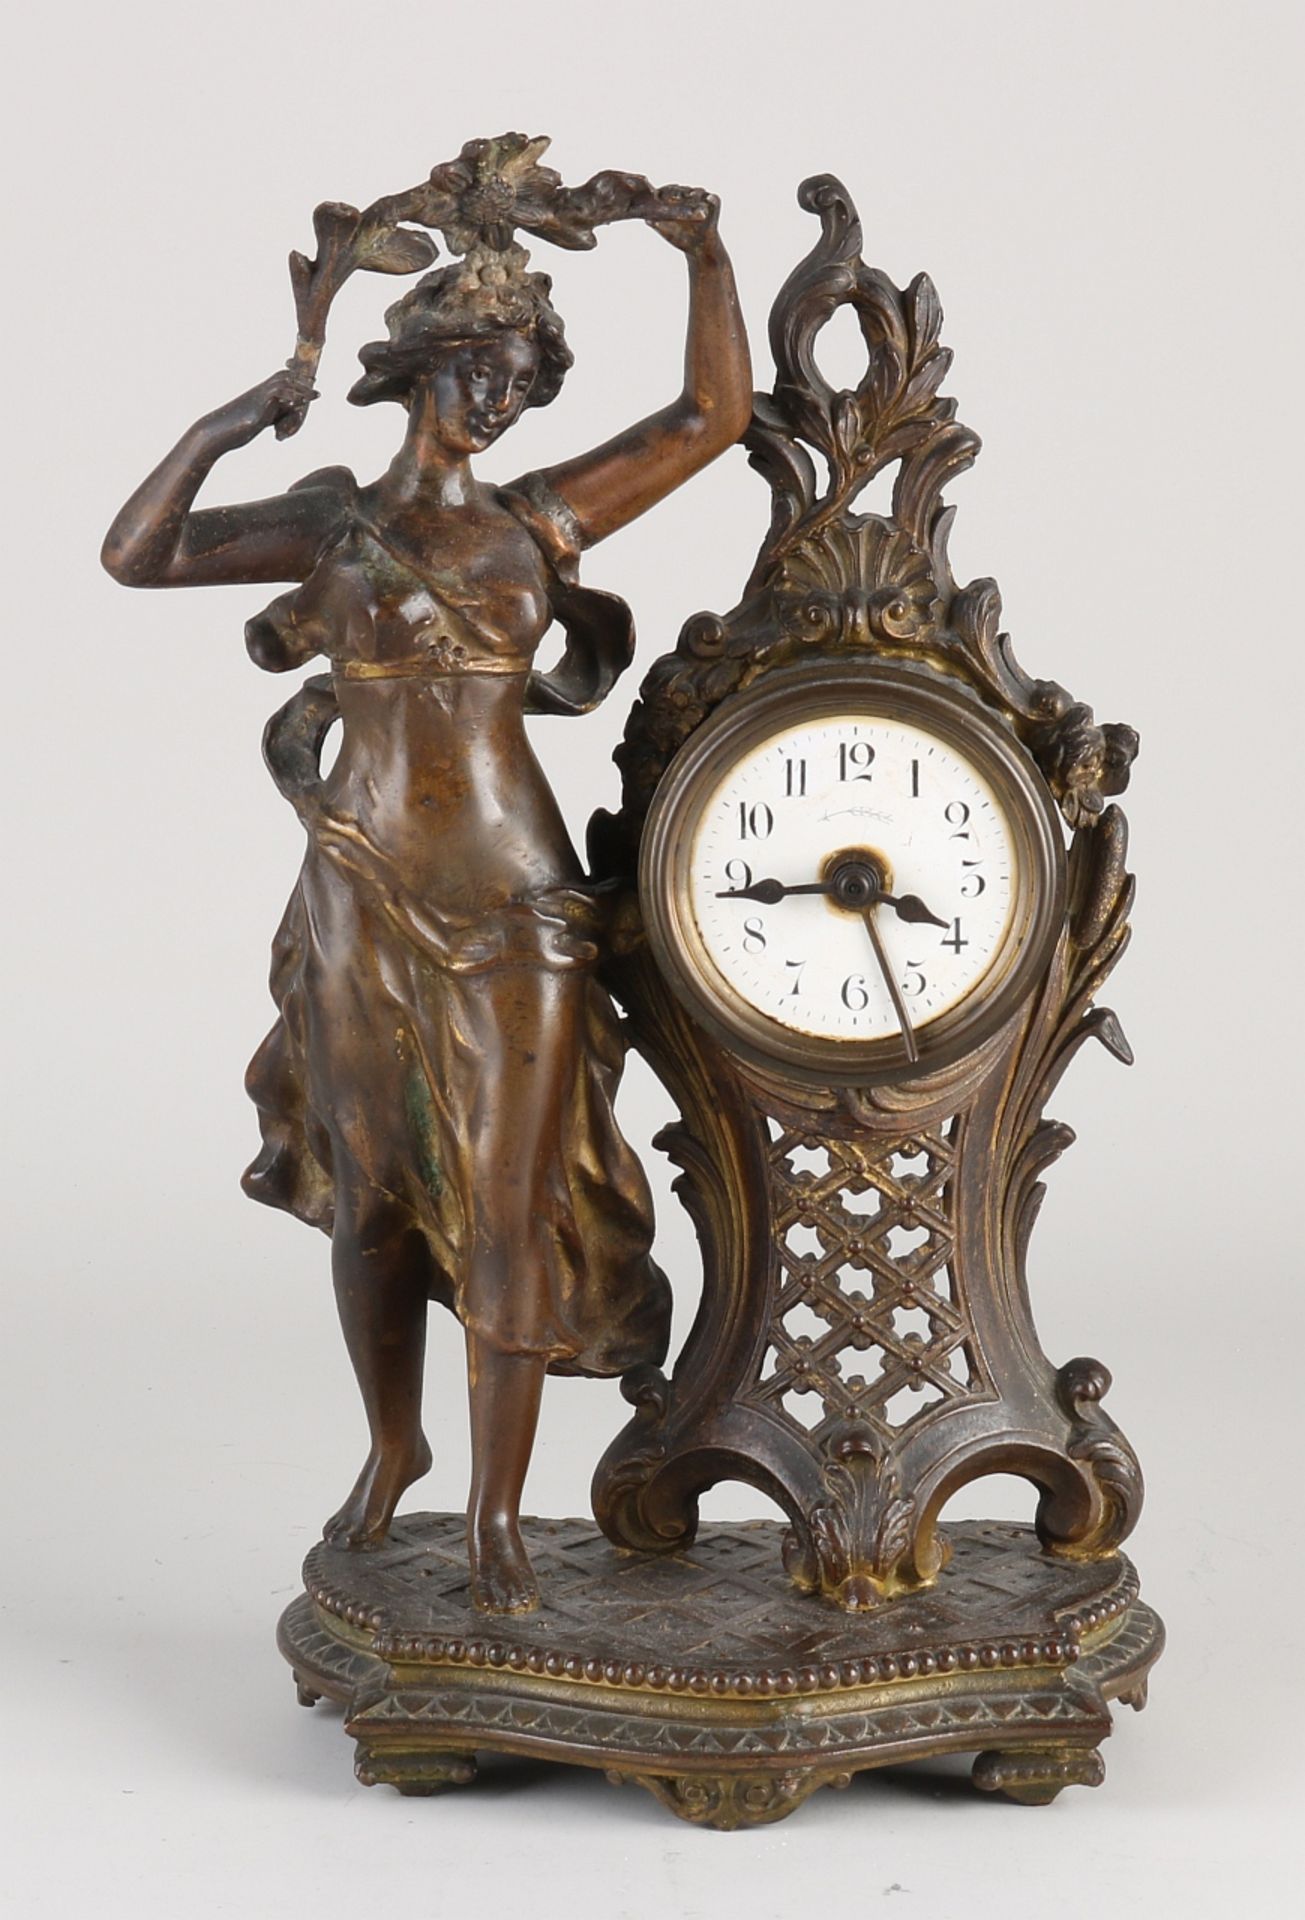 Antique French alarm clock